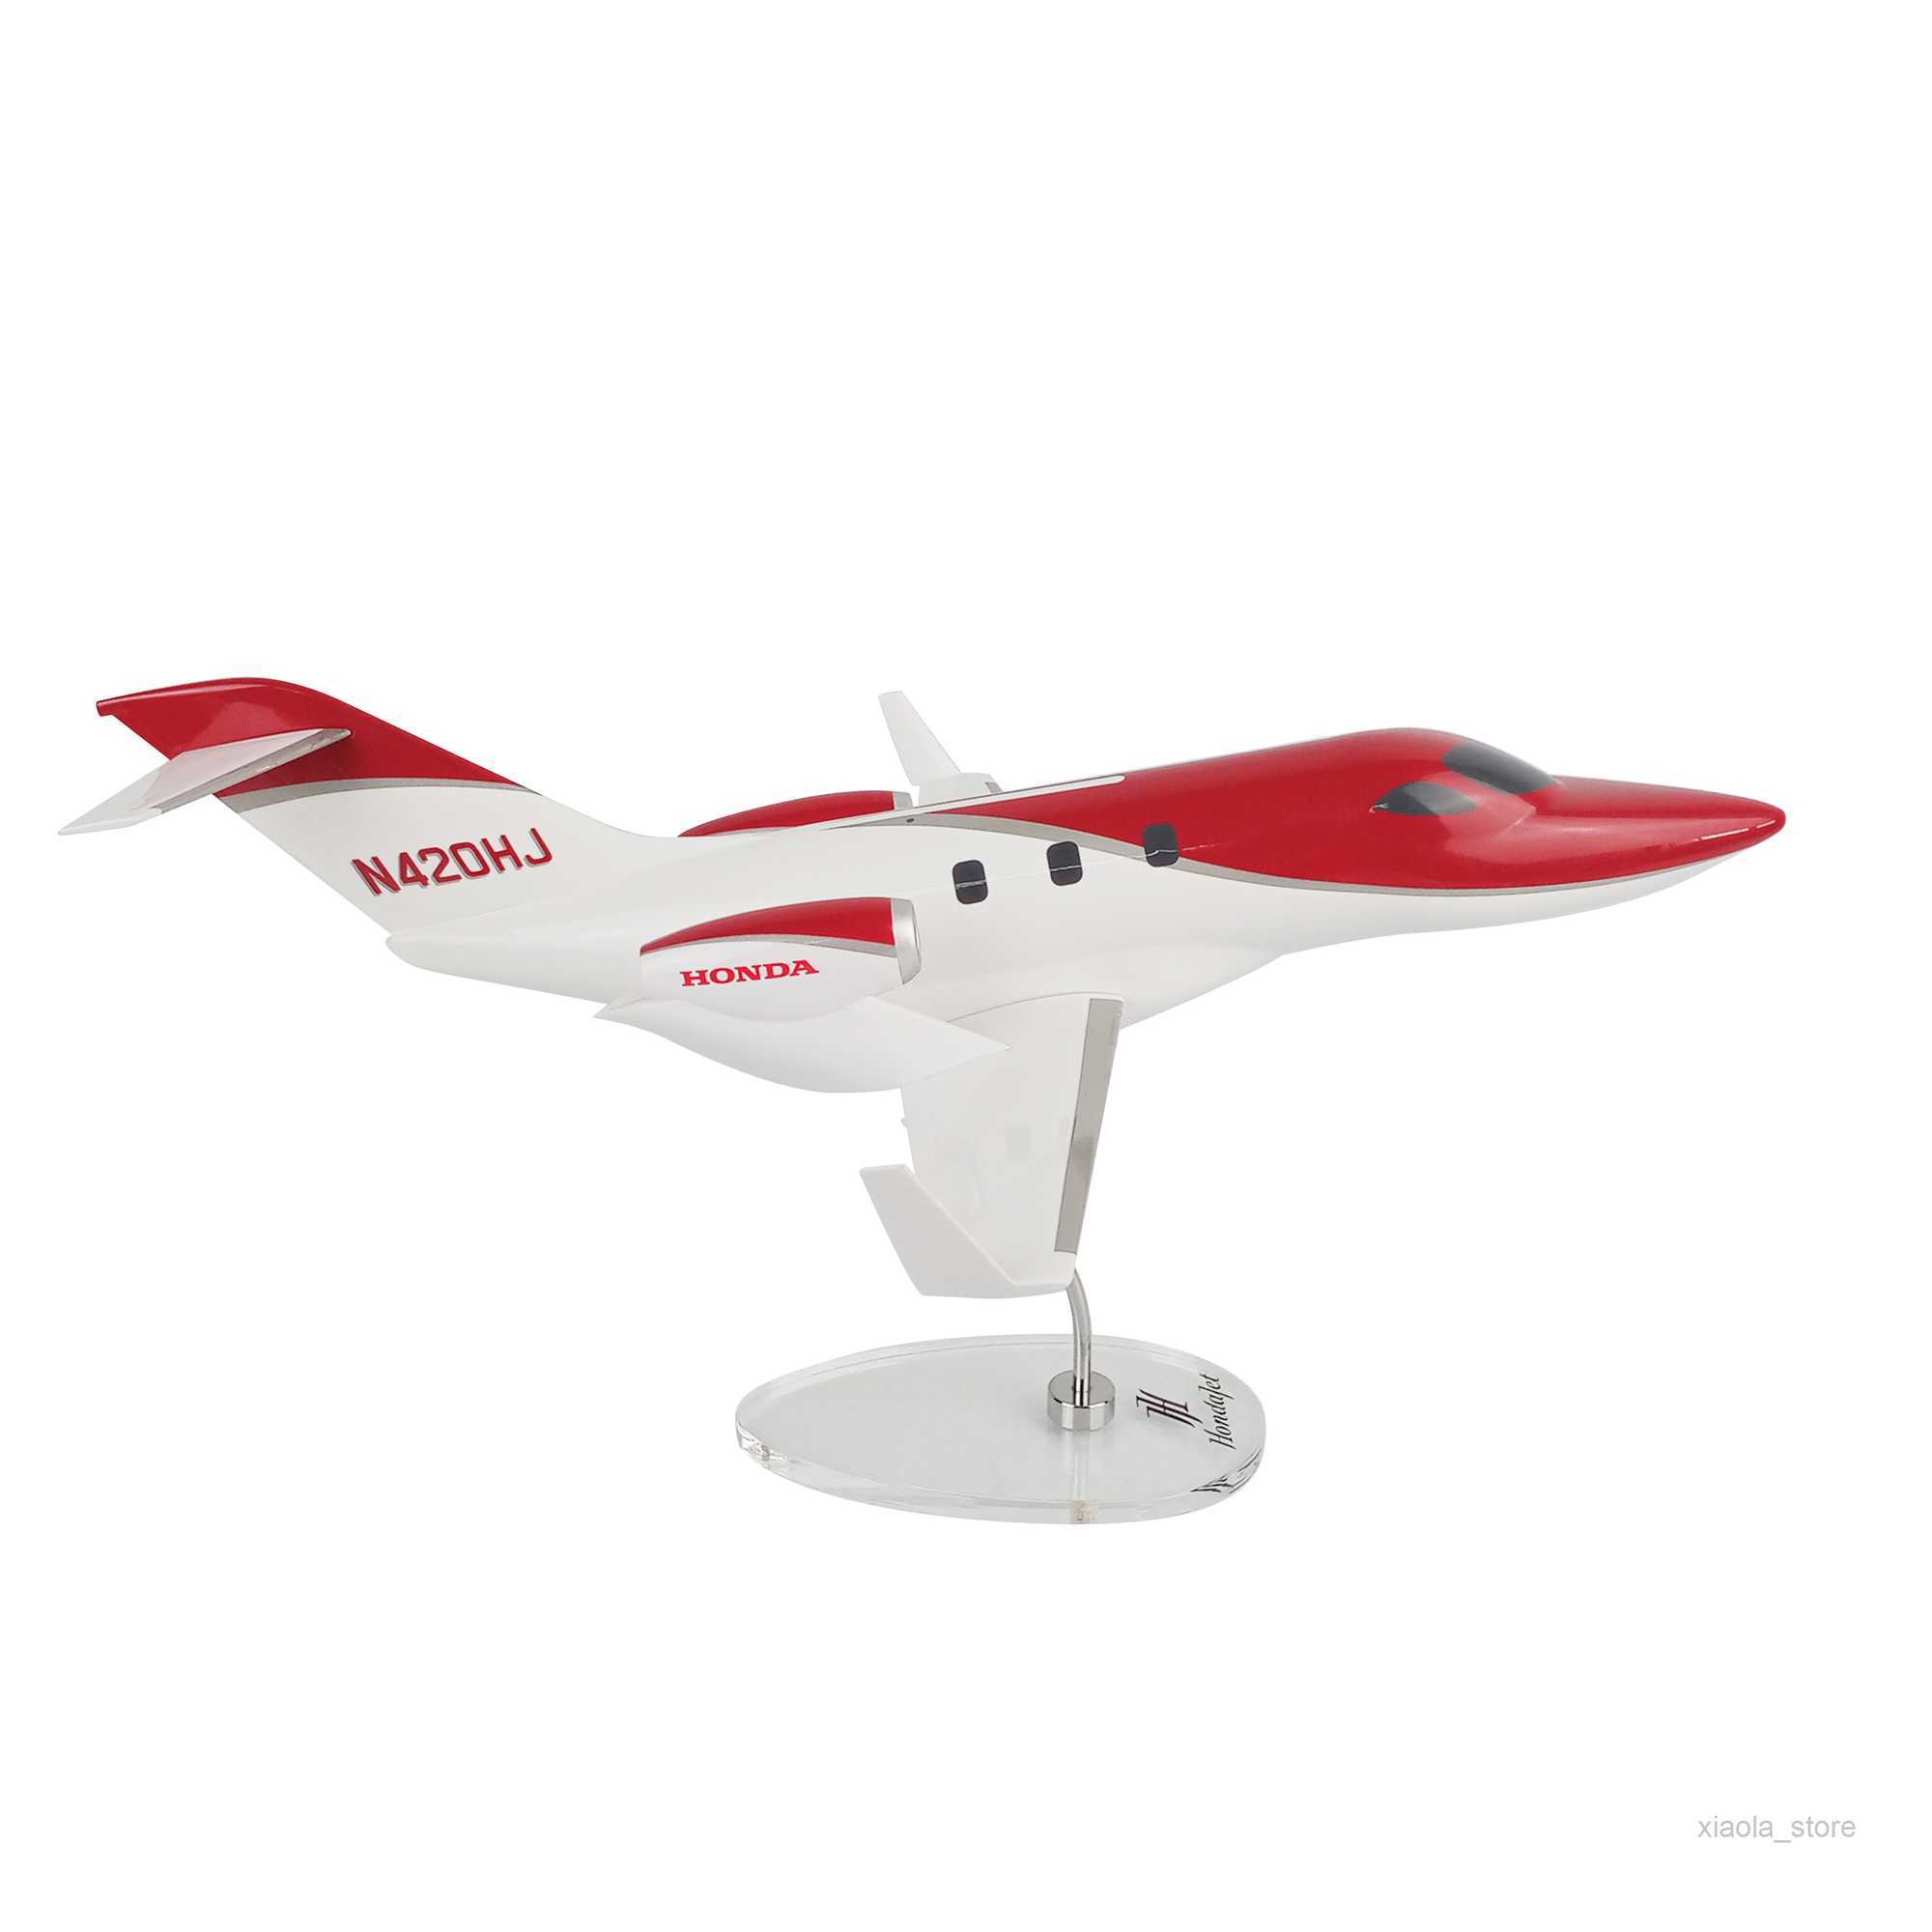 Modello di aereo HondaJet Red 1/32 Scale Business Jet Plane Display Collection Modello di aereoHKD230701